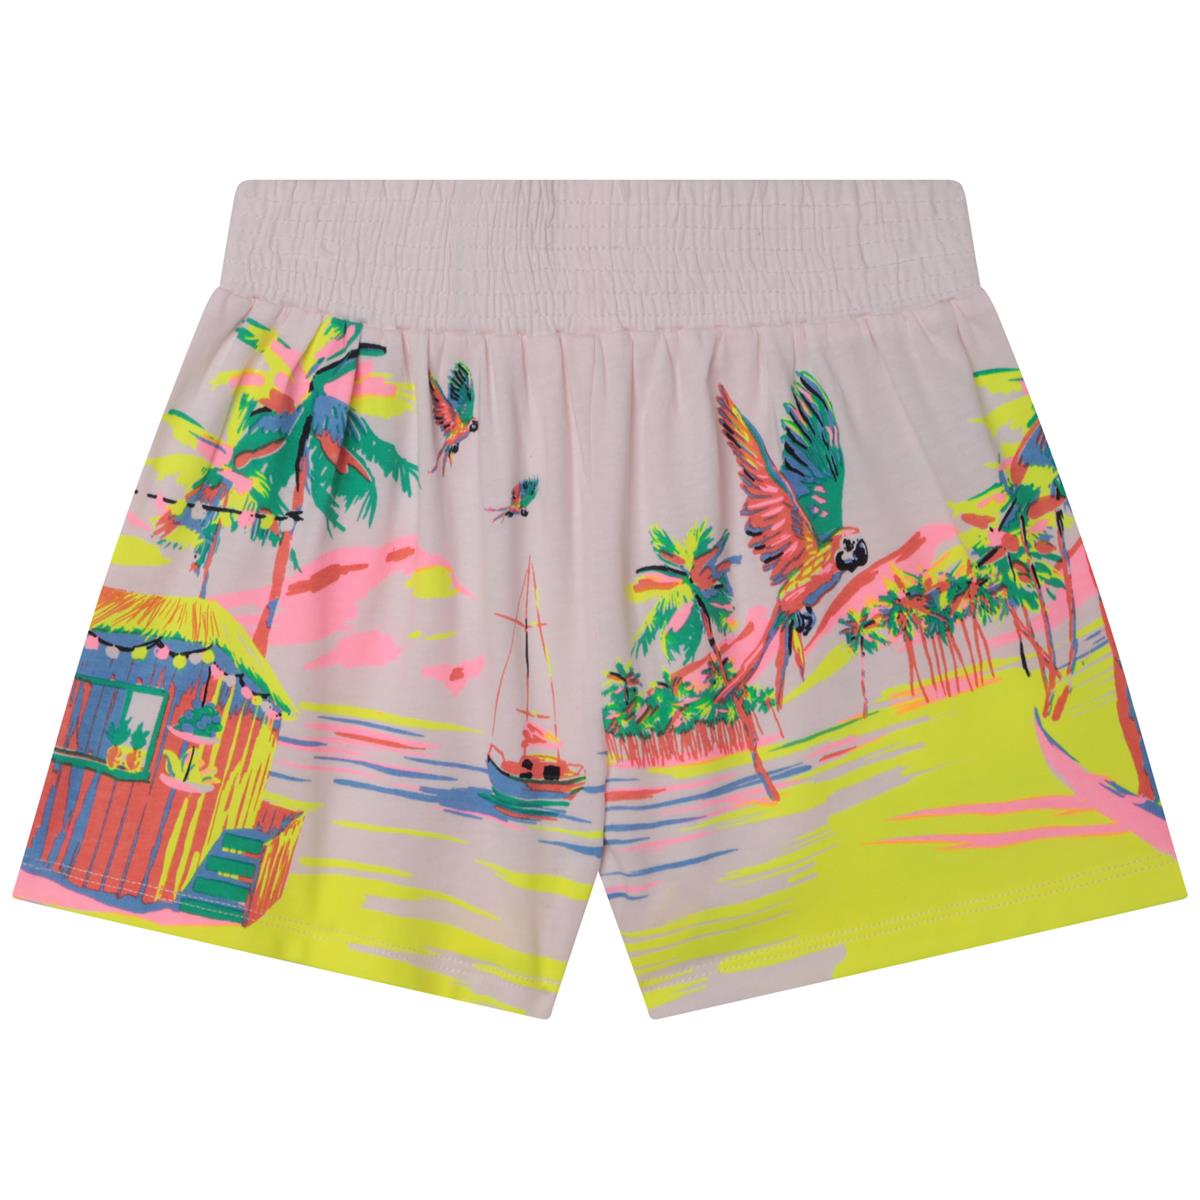 Girls Pink Printed Shorts